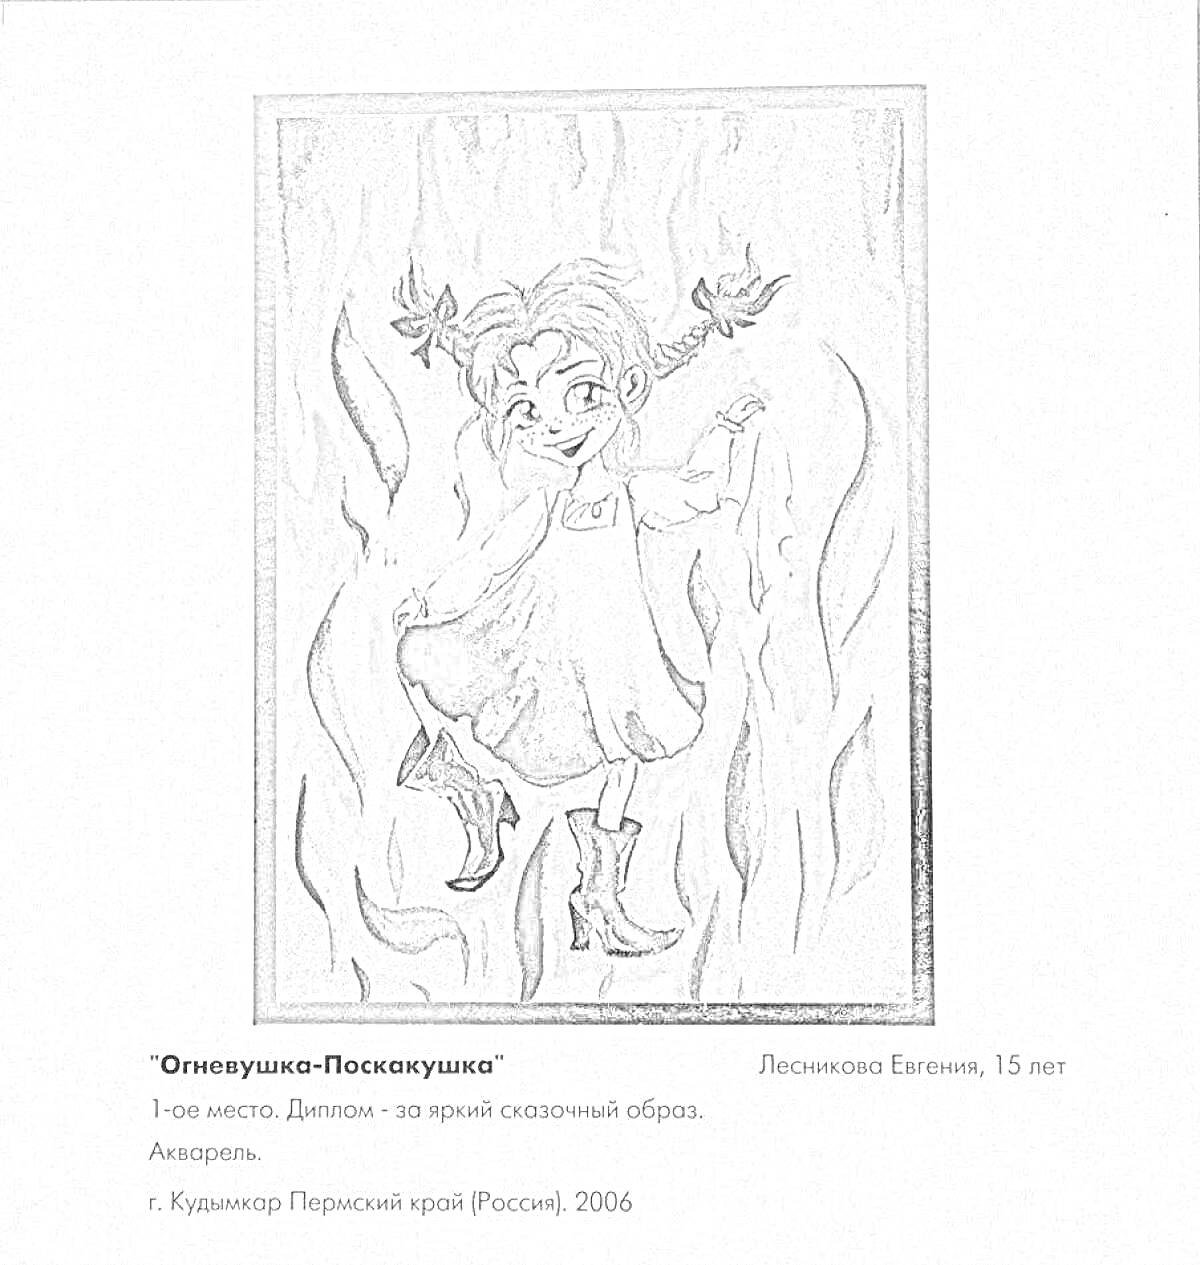 Раскраска Огневушка-Поскокушка, девочка в платье с пышными бантами, танцующая среди огня, черно-белое изображение